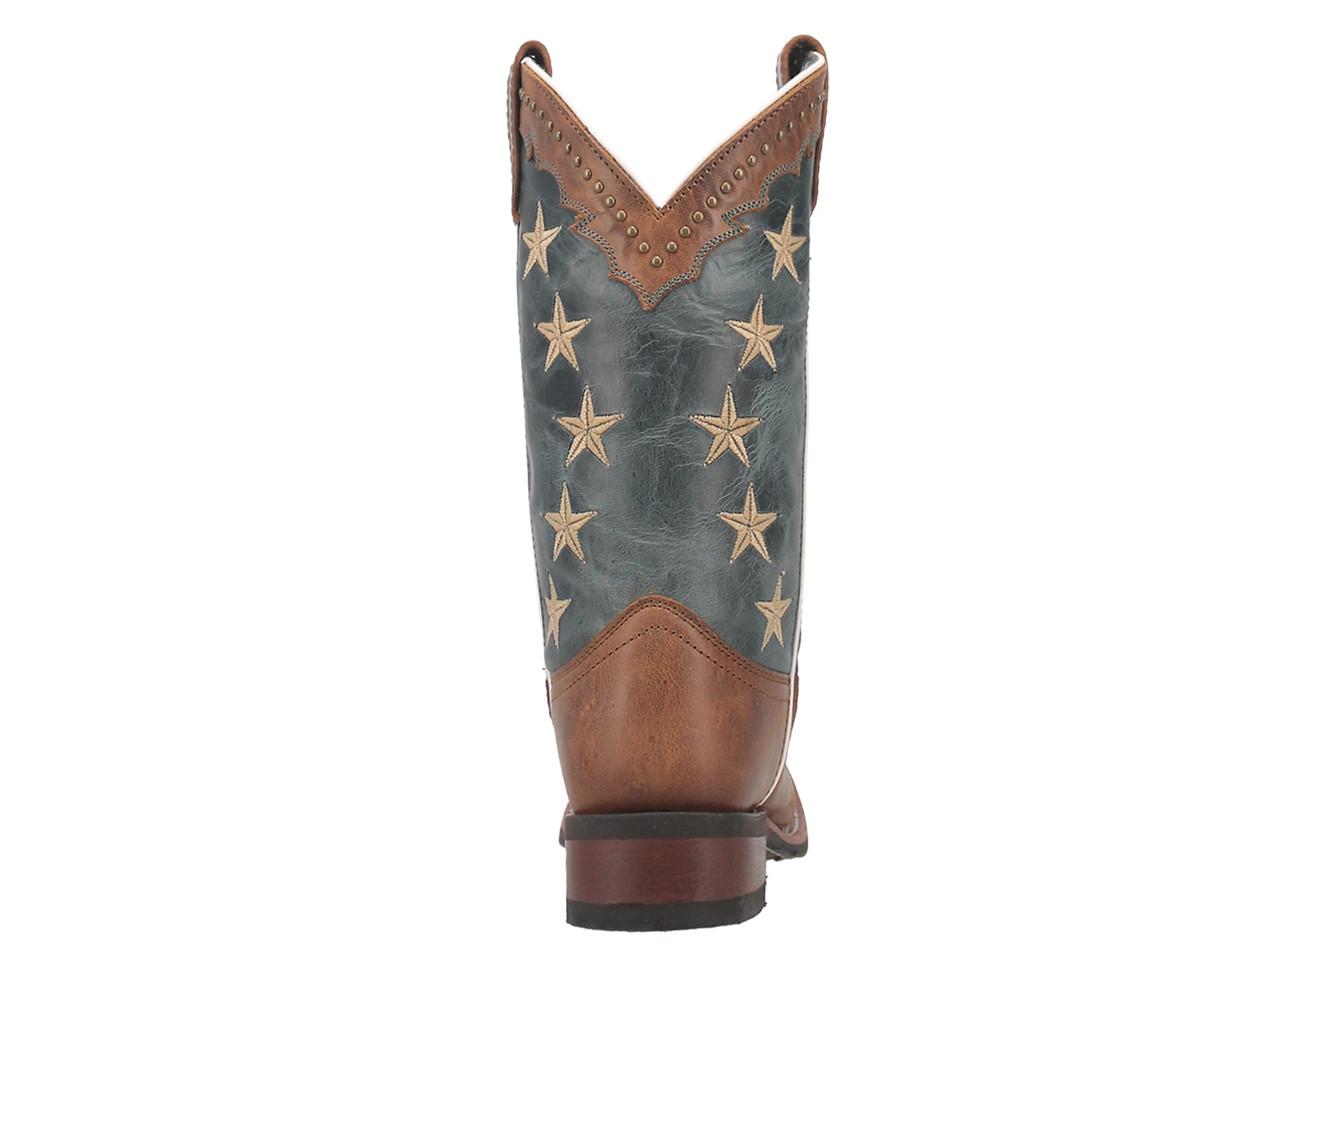 Women's Laredo Western Boots Early Star